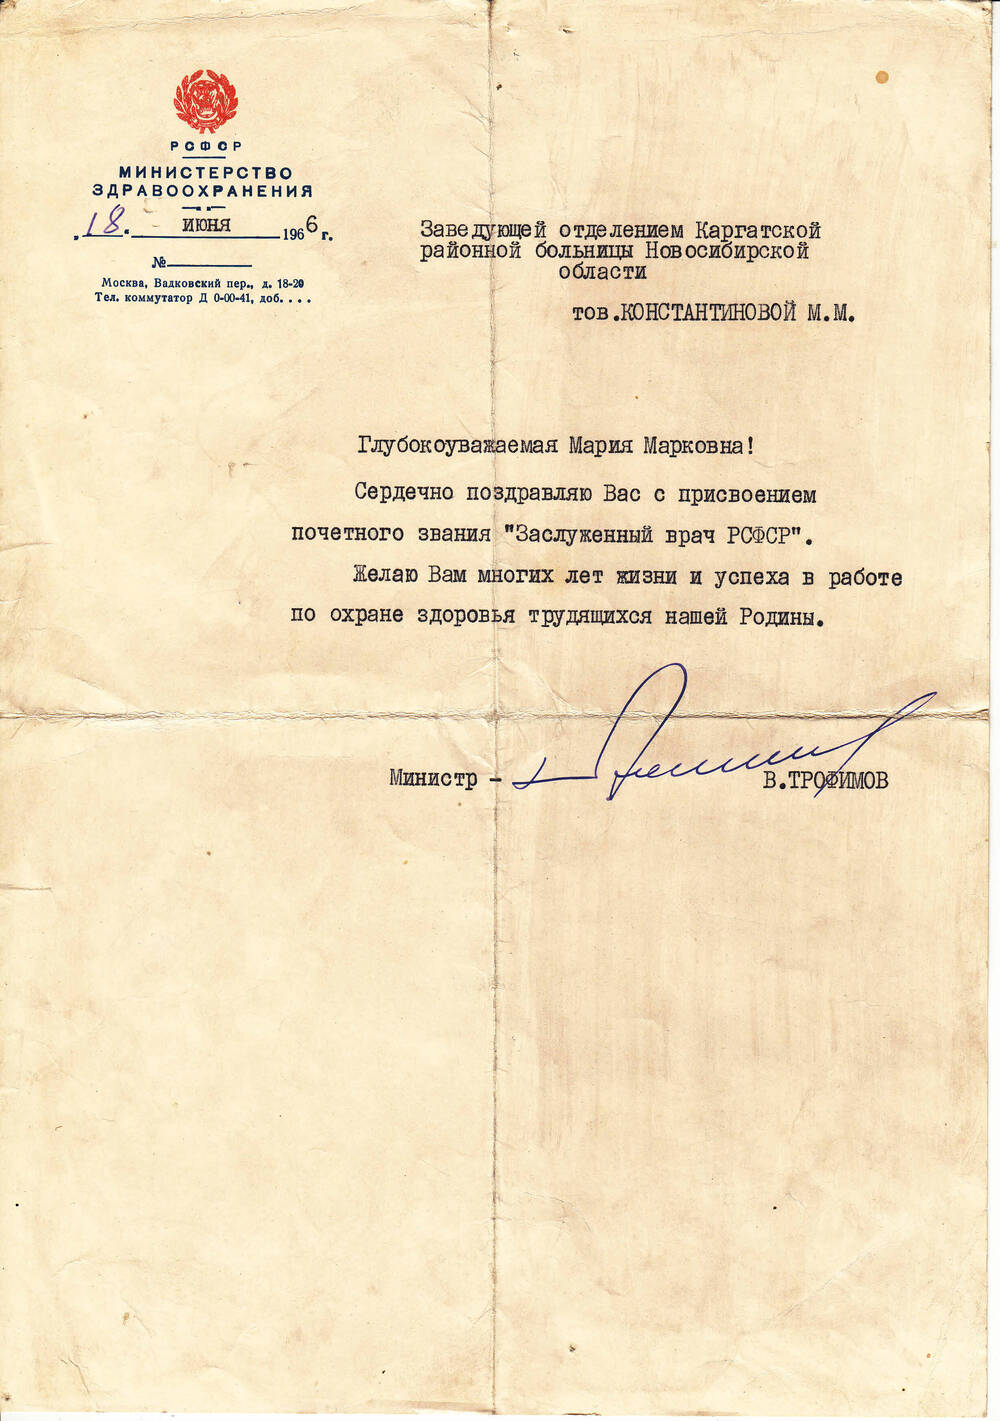 Поздравление (письмо Министерства здравоохранения для Константиновой М.М.)